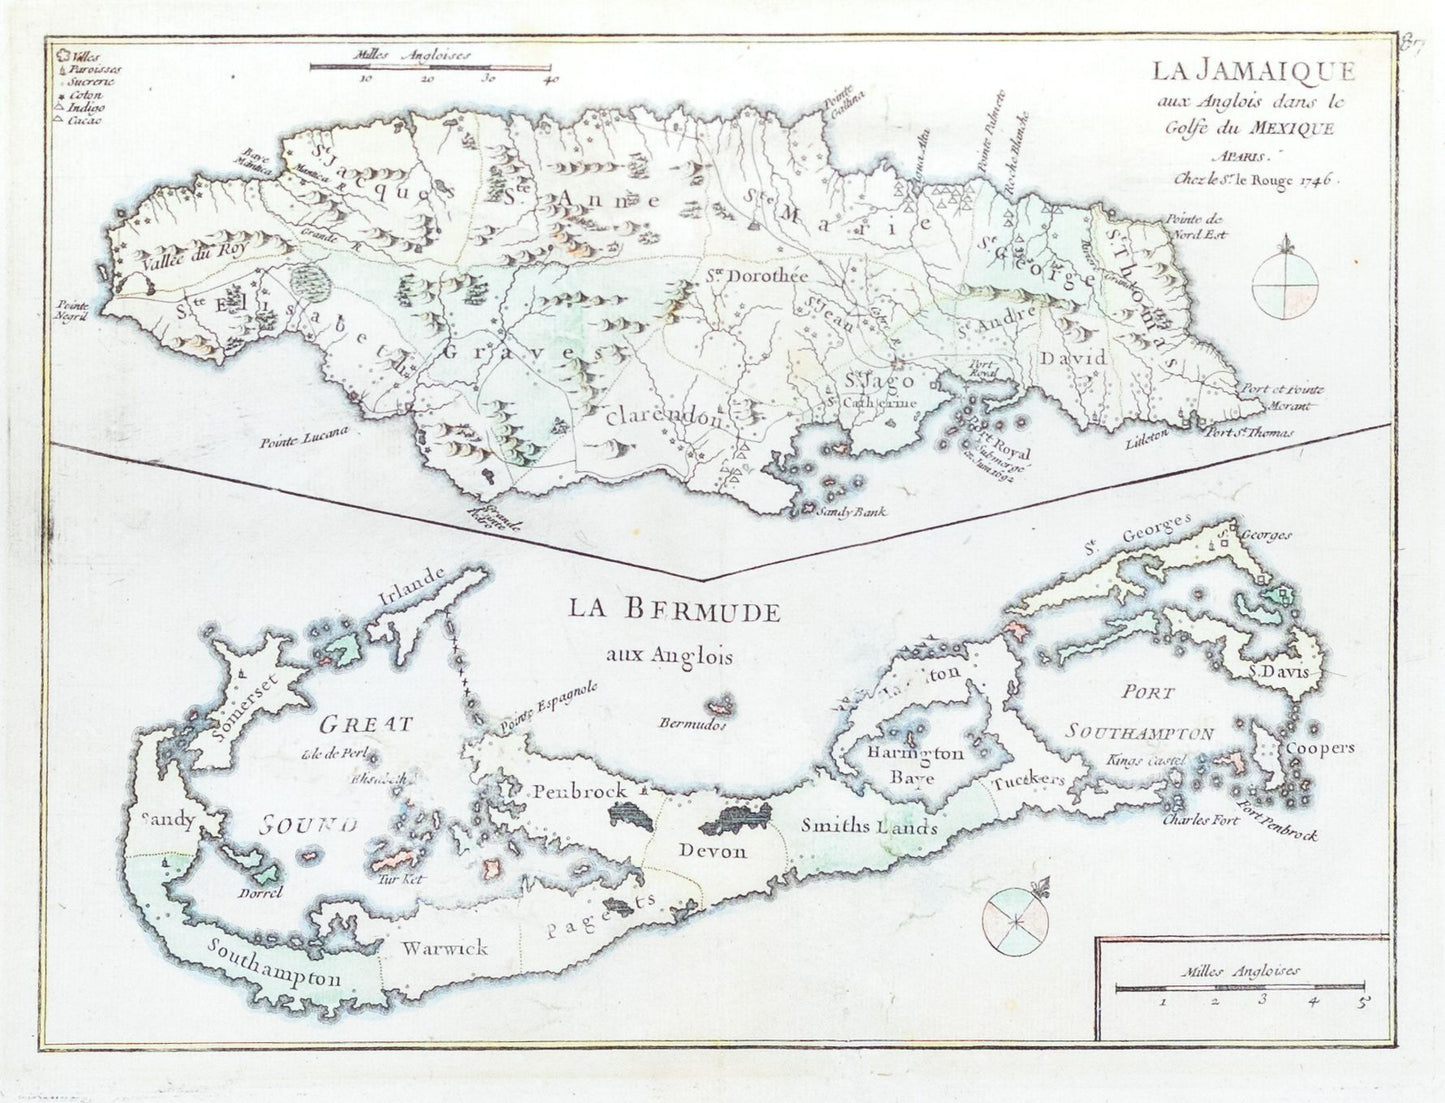 Le Rouge. La Jamaique aux Anglois dans le Golfe du Mexique. 1746.